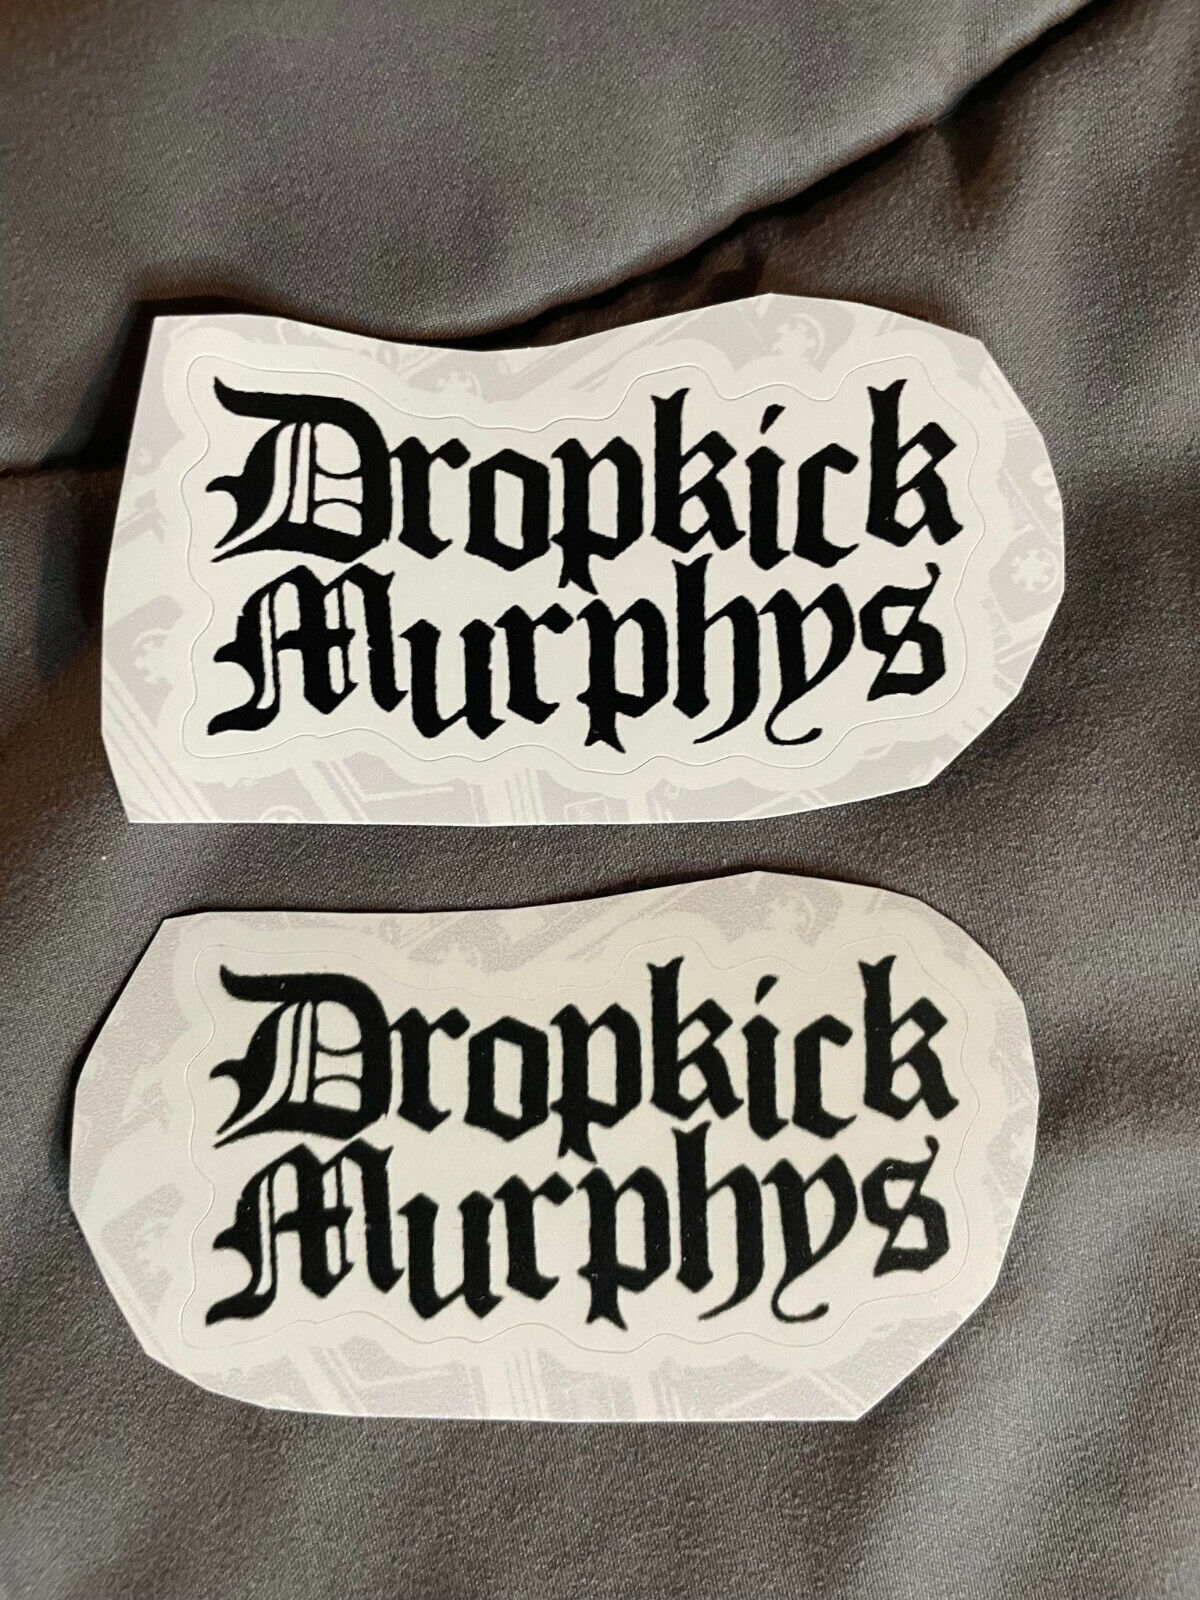 Lot Of 2 Dropkick Murphys 1 1/4" X 2 3/4" Band Logo Stickers Black White Fast!